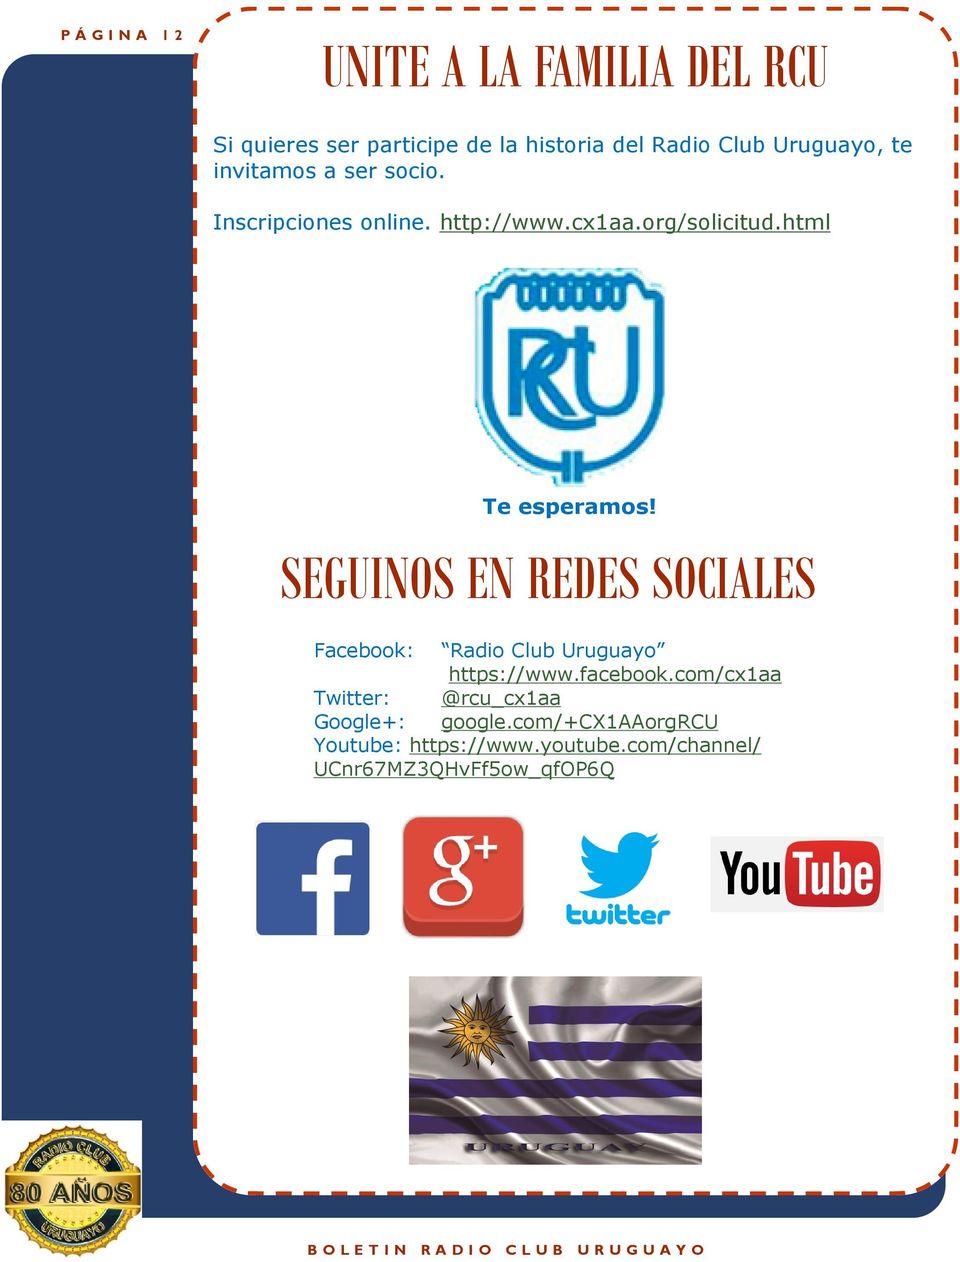 SEGUINOS EN REDES SOCIALES Facebook: Radio Club Uruguayo https://www.facebook.